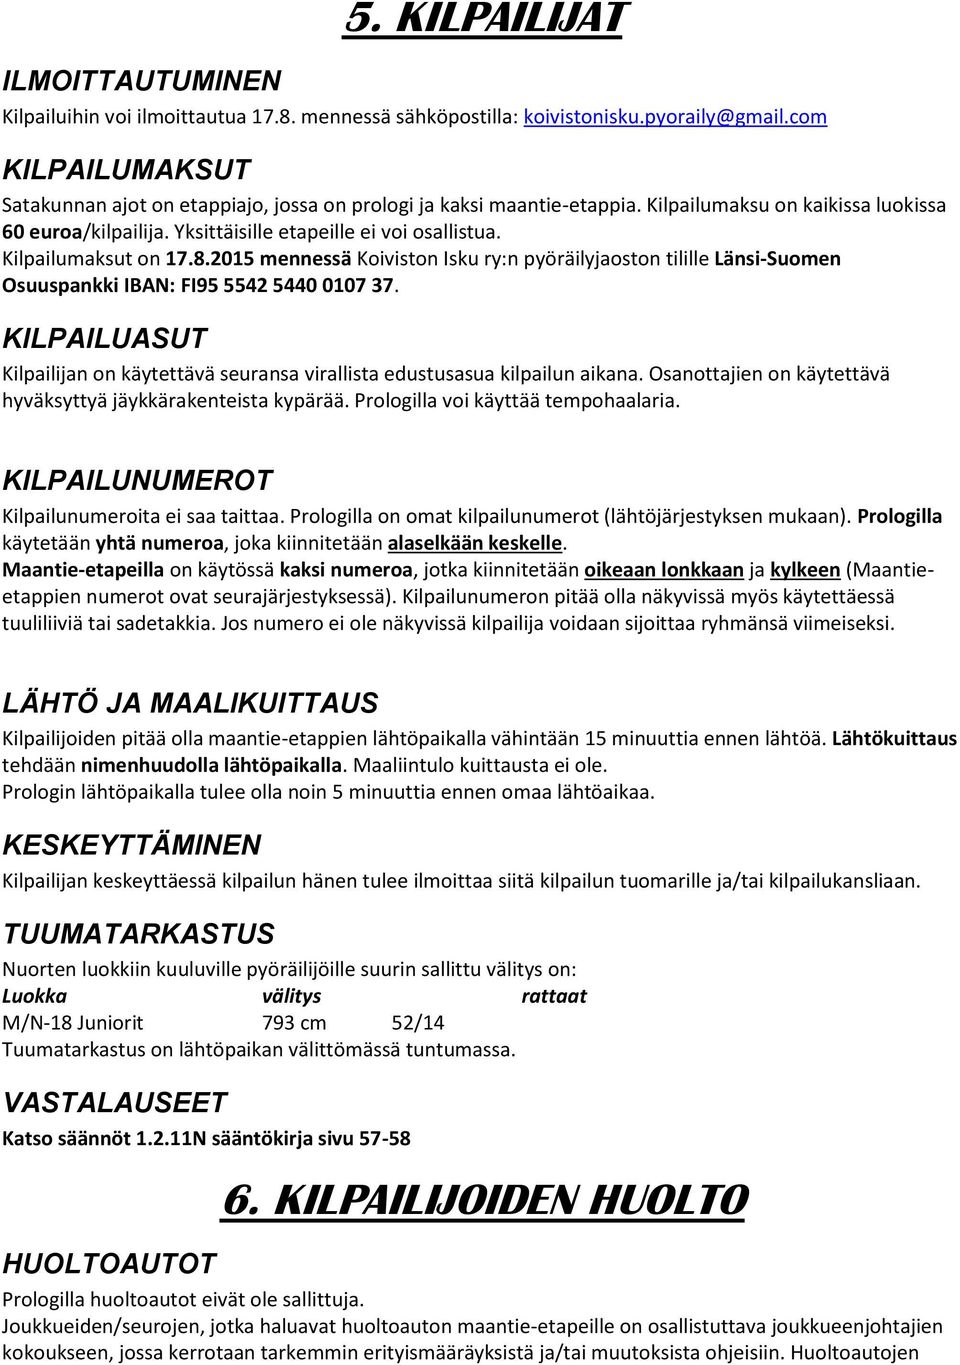 Kilpailumaksut on 17.8.2015 mennessä Koiviston Isku ry:n pyöräilyjaoston tilille Länsi-Suomen Osuuspankki IBAN: FI95 5542 5440 0107 37.